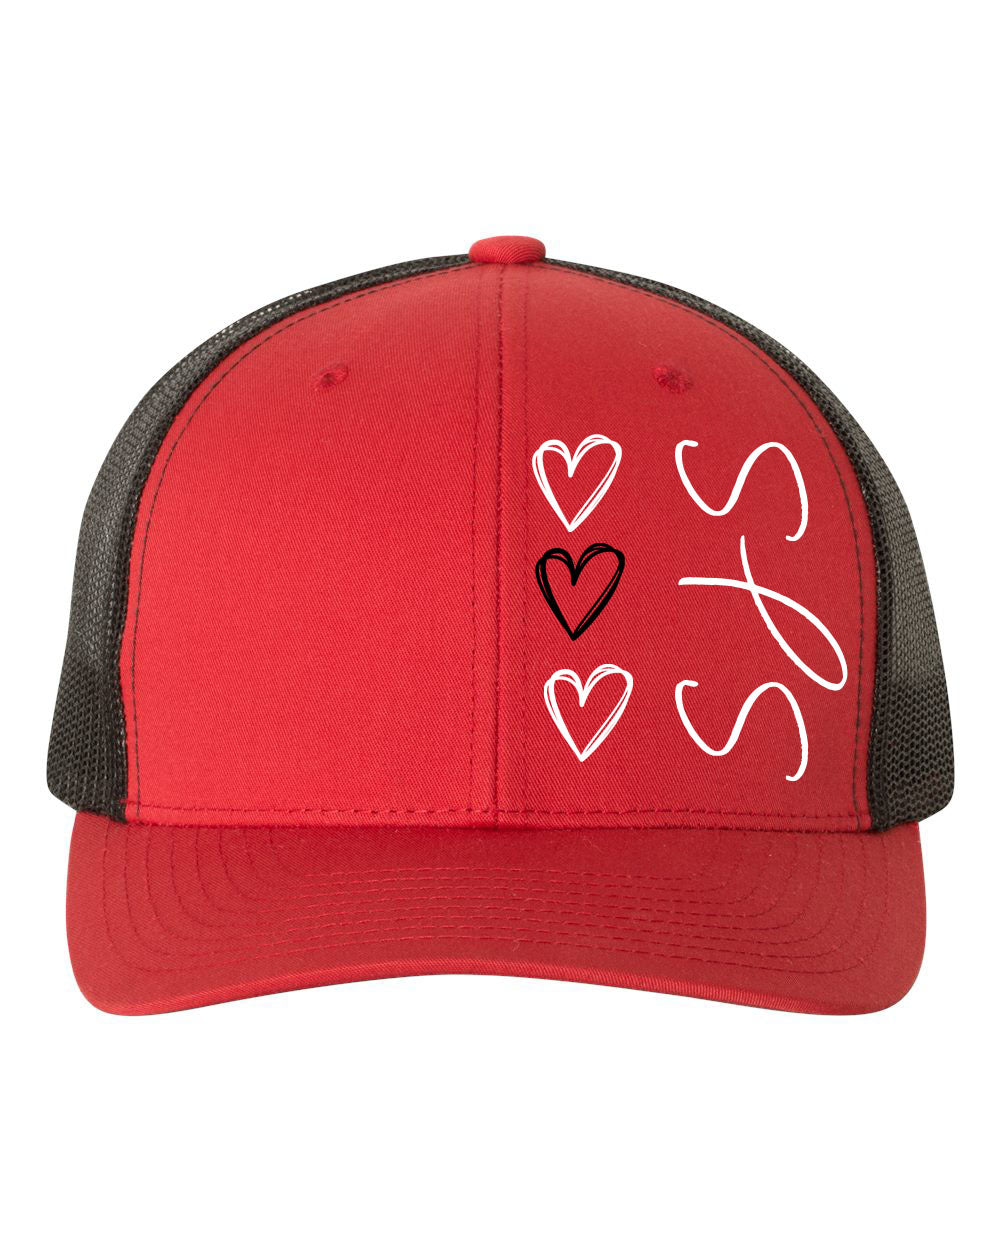 St. John's design 1 Trucker Hat